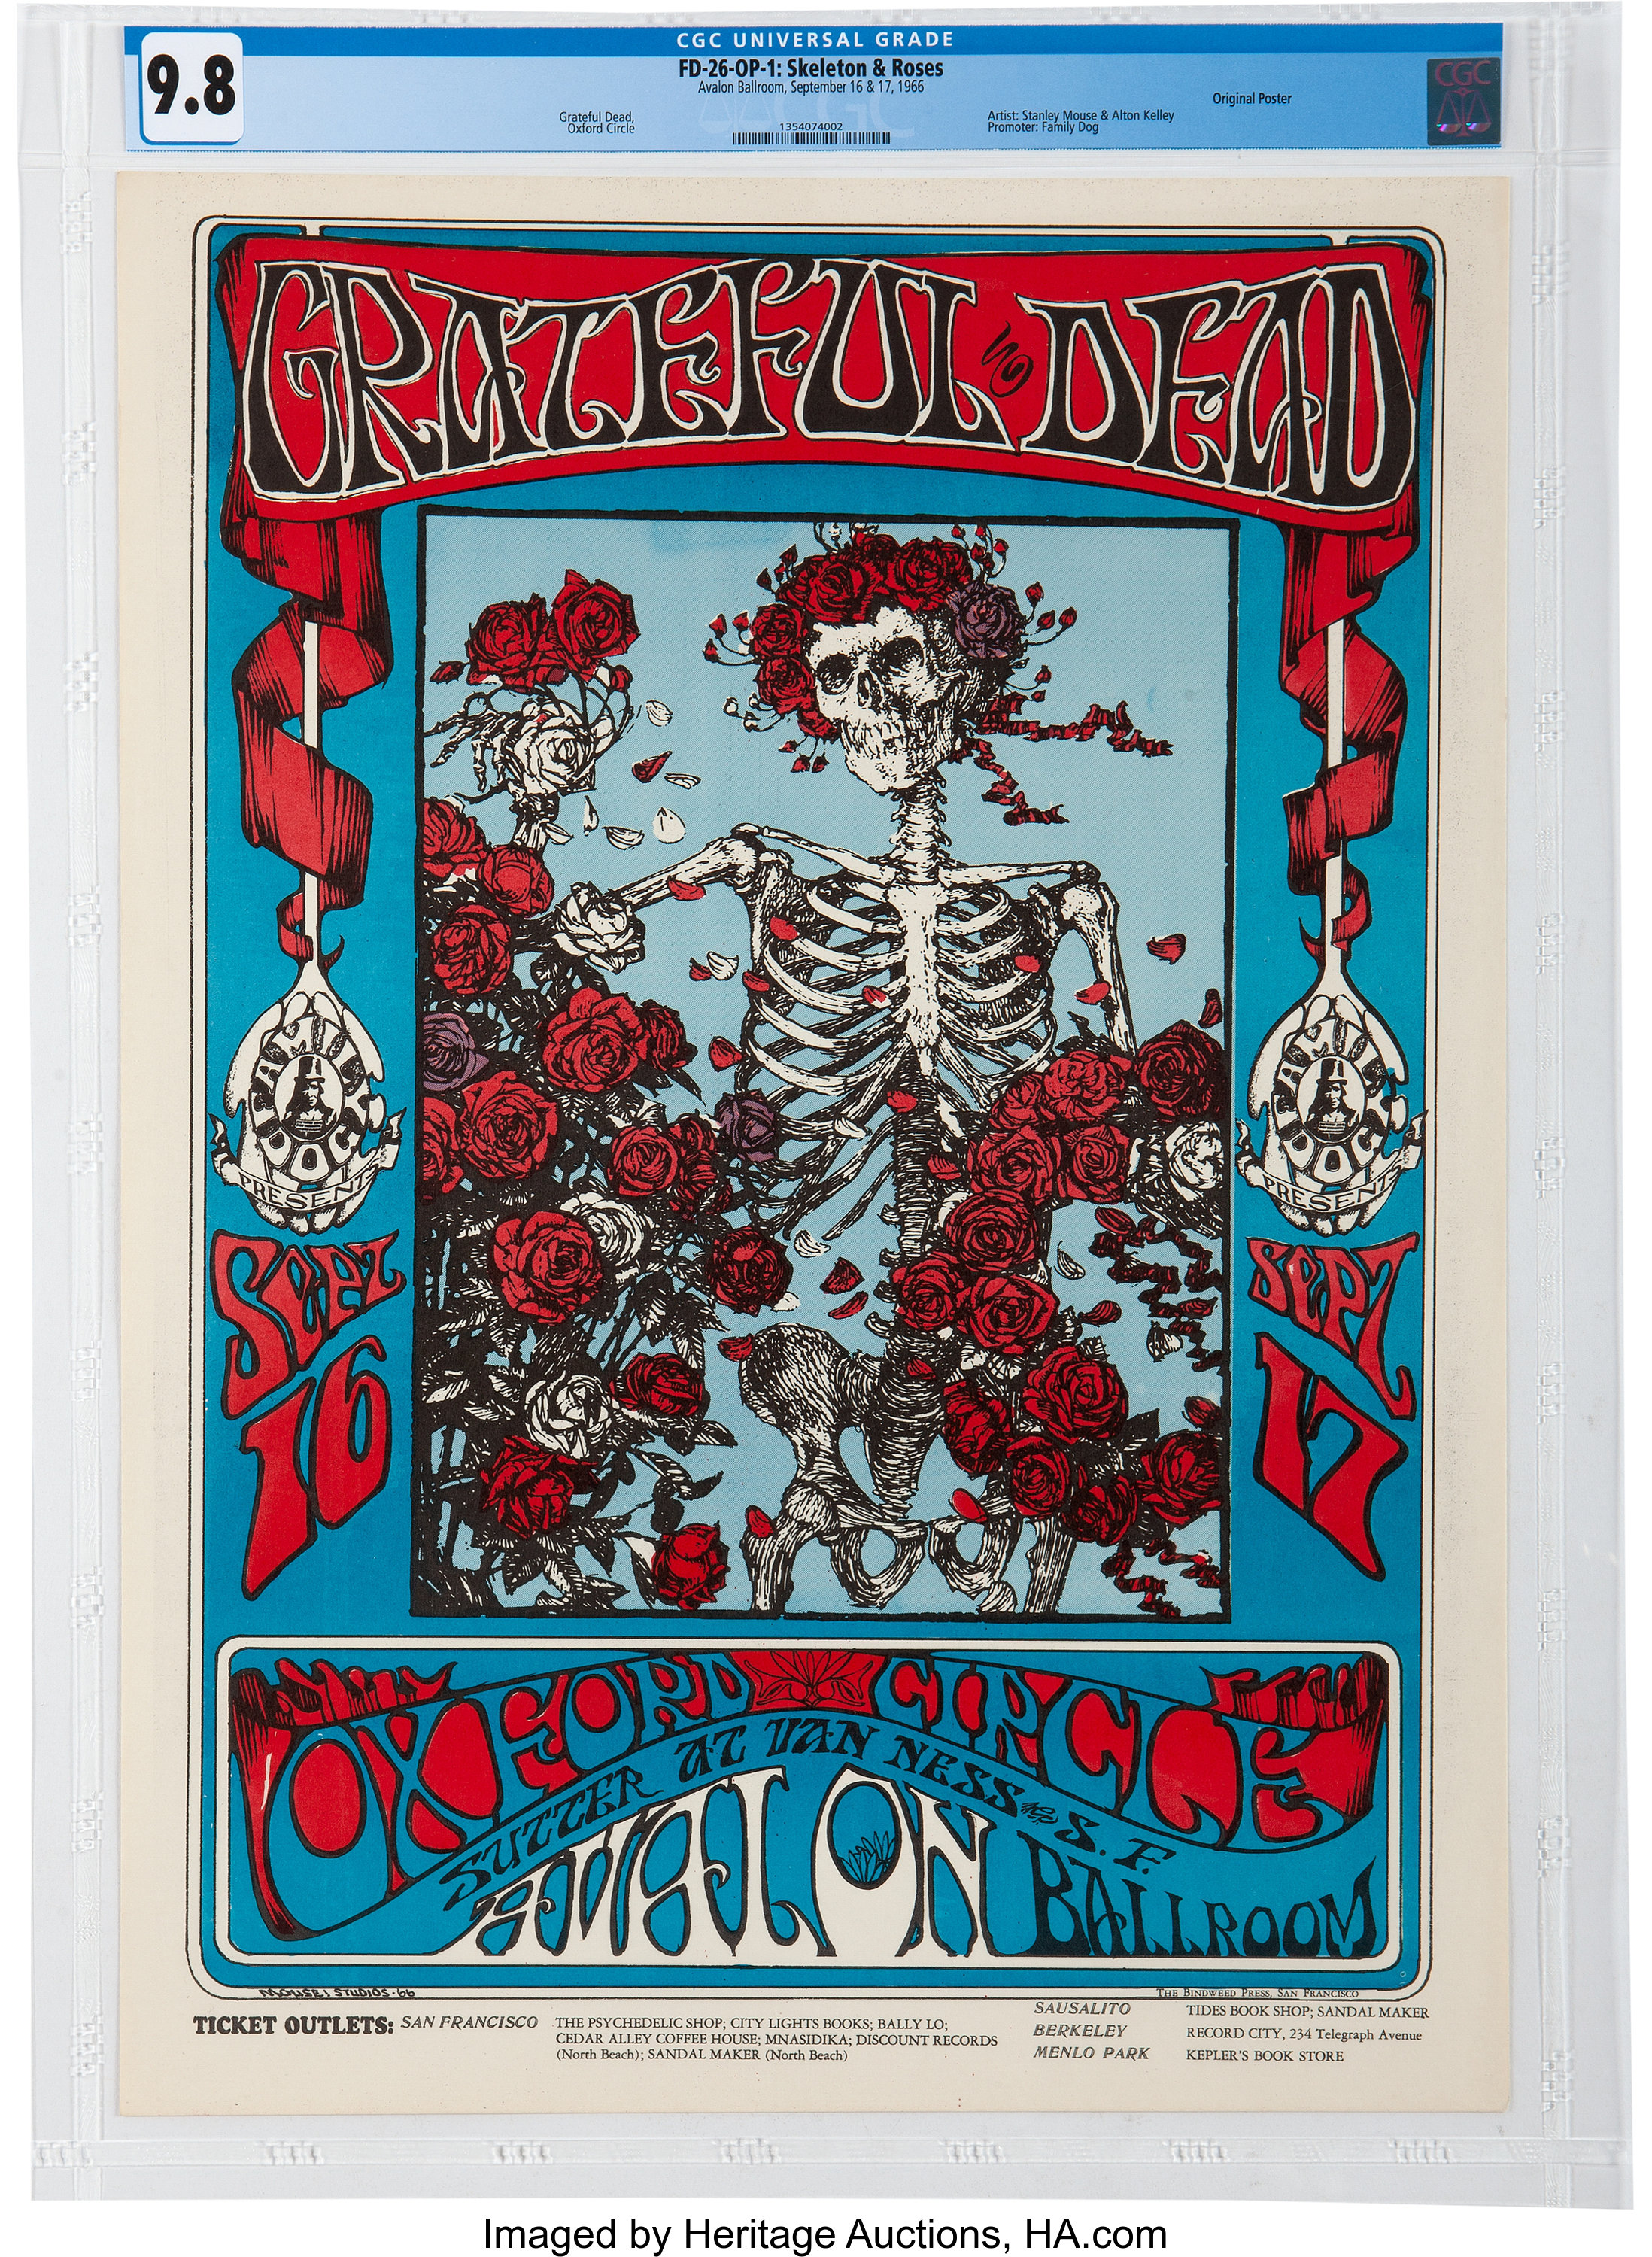 grateful dead skeleton poster